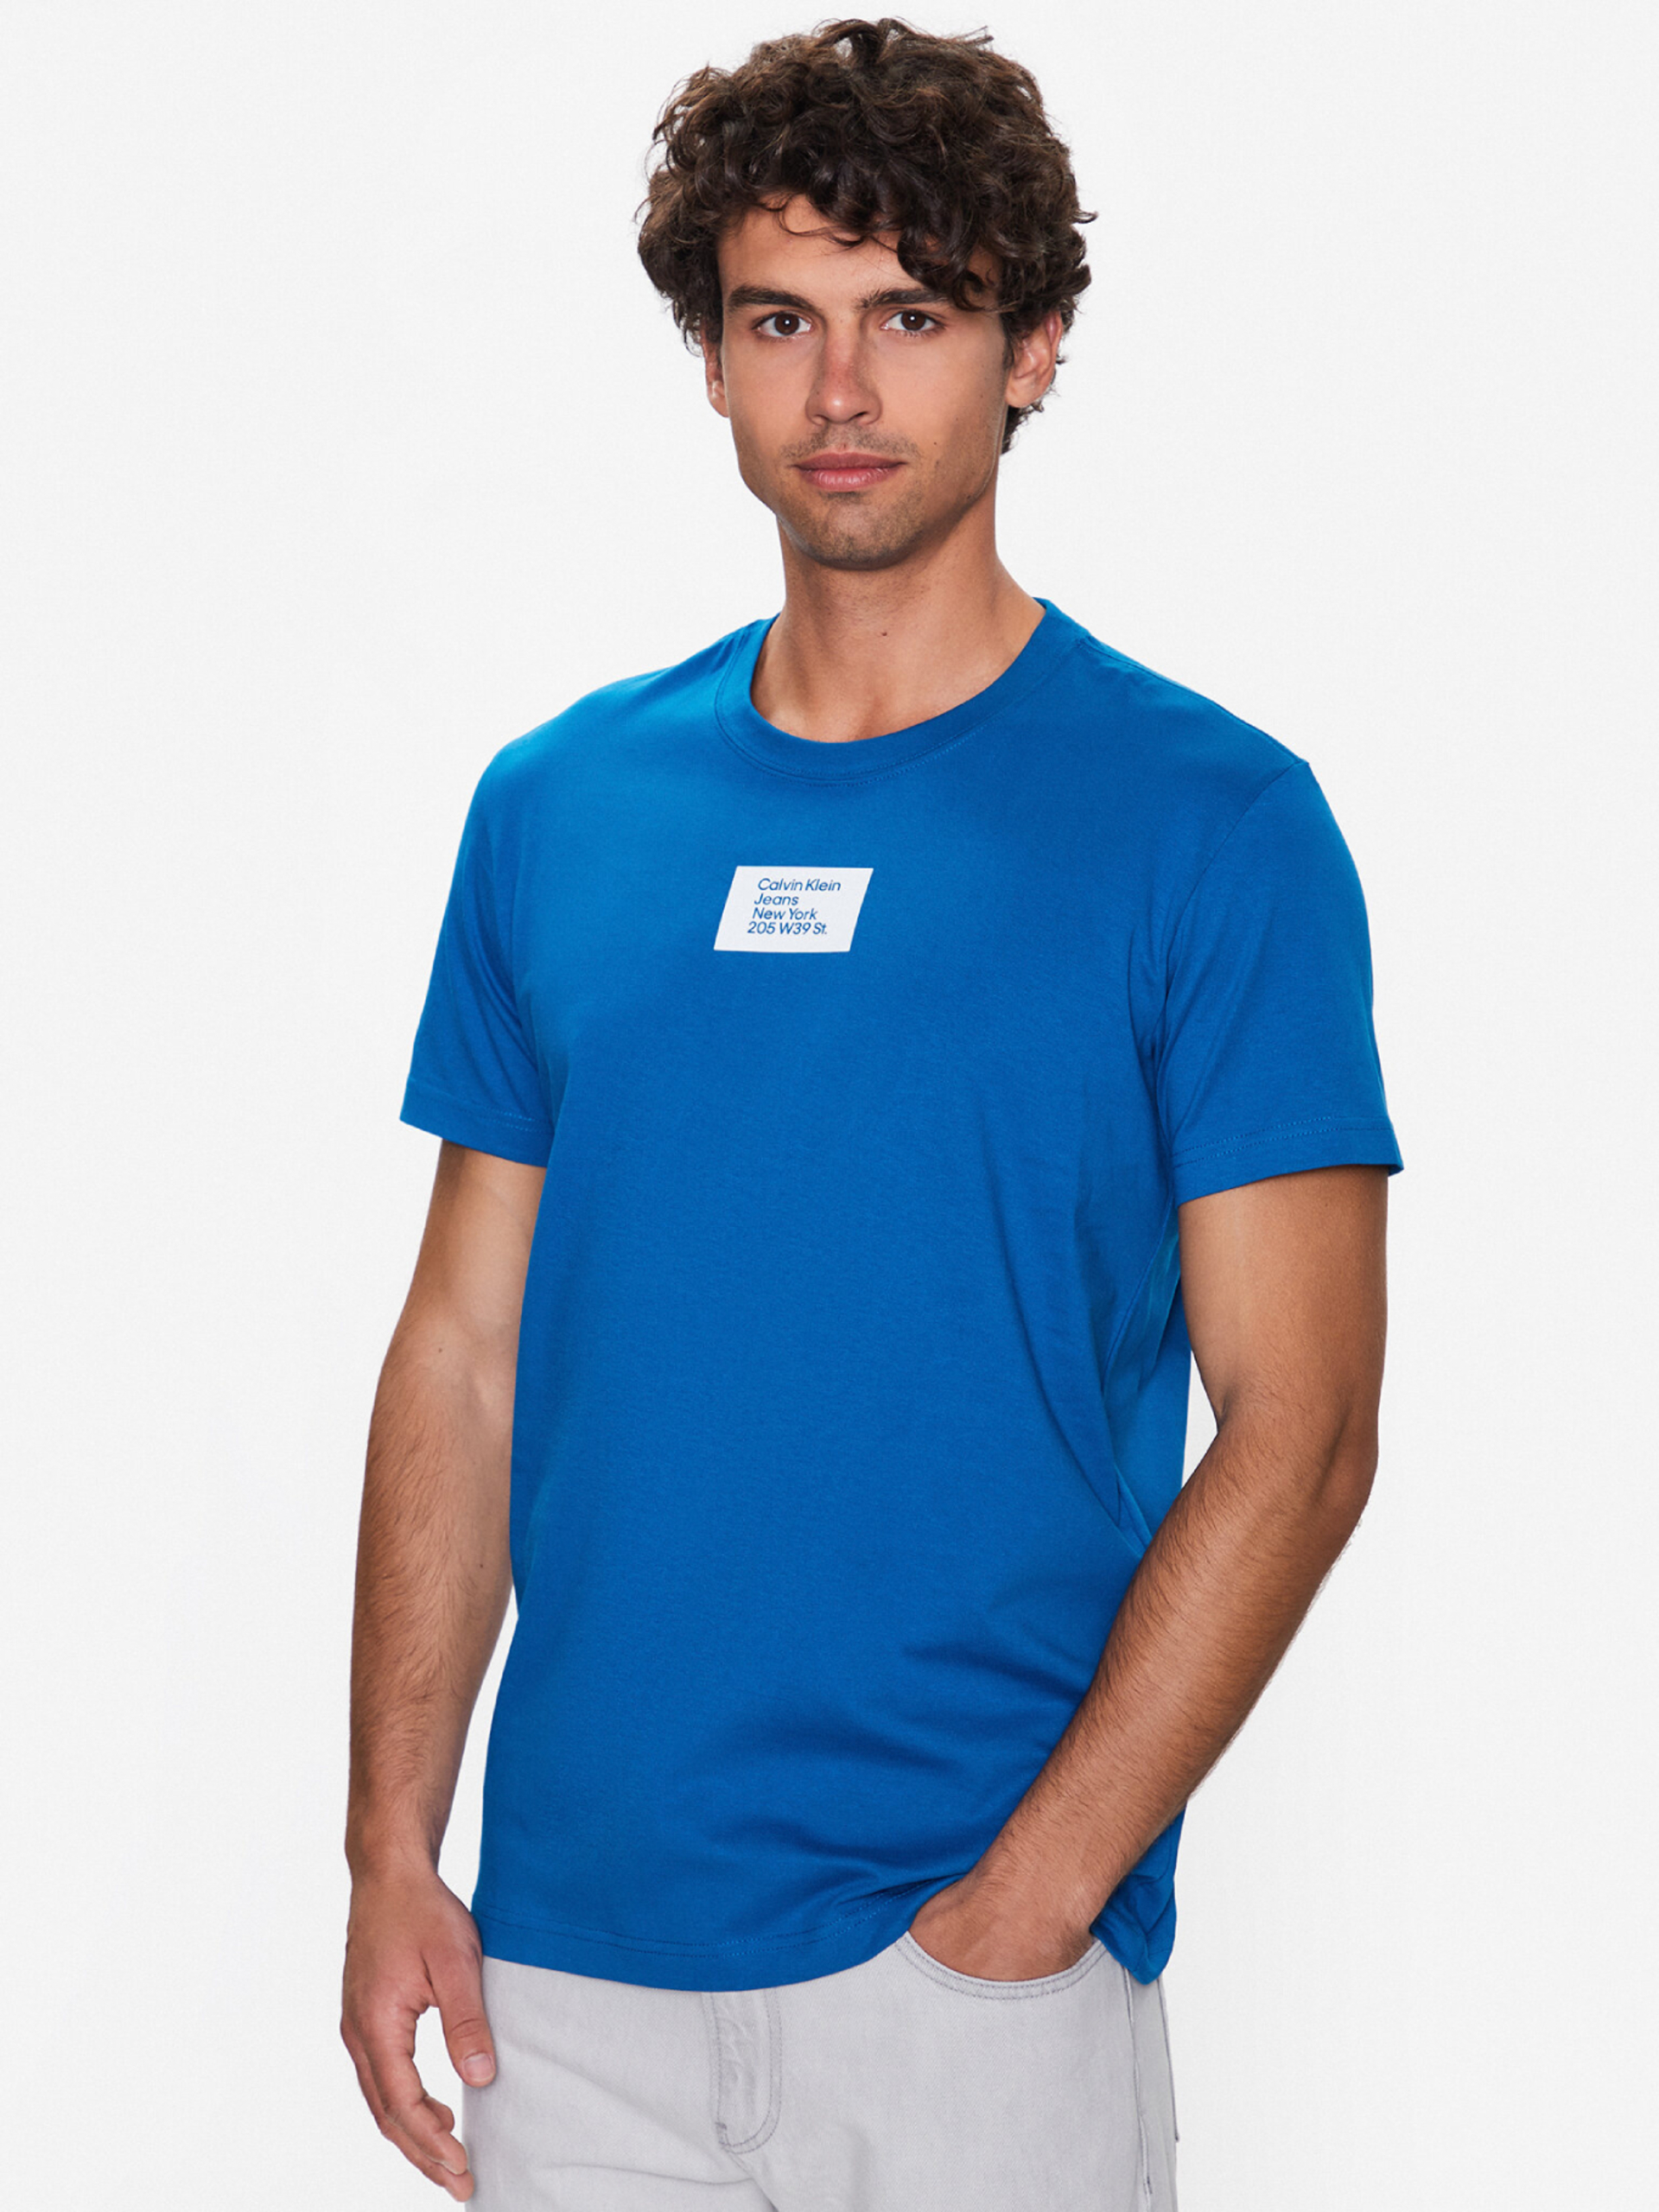 Calvin Klein pánské modré tričko - XXL (C3B)